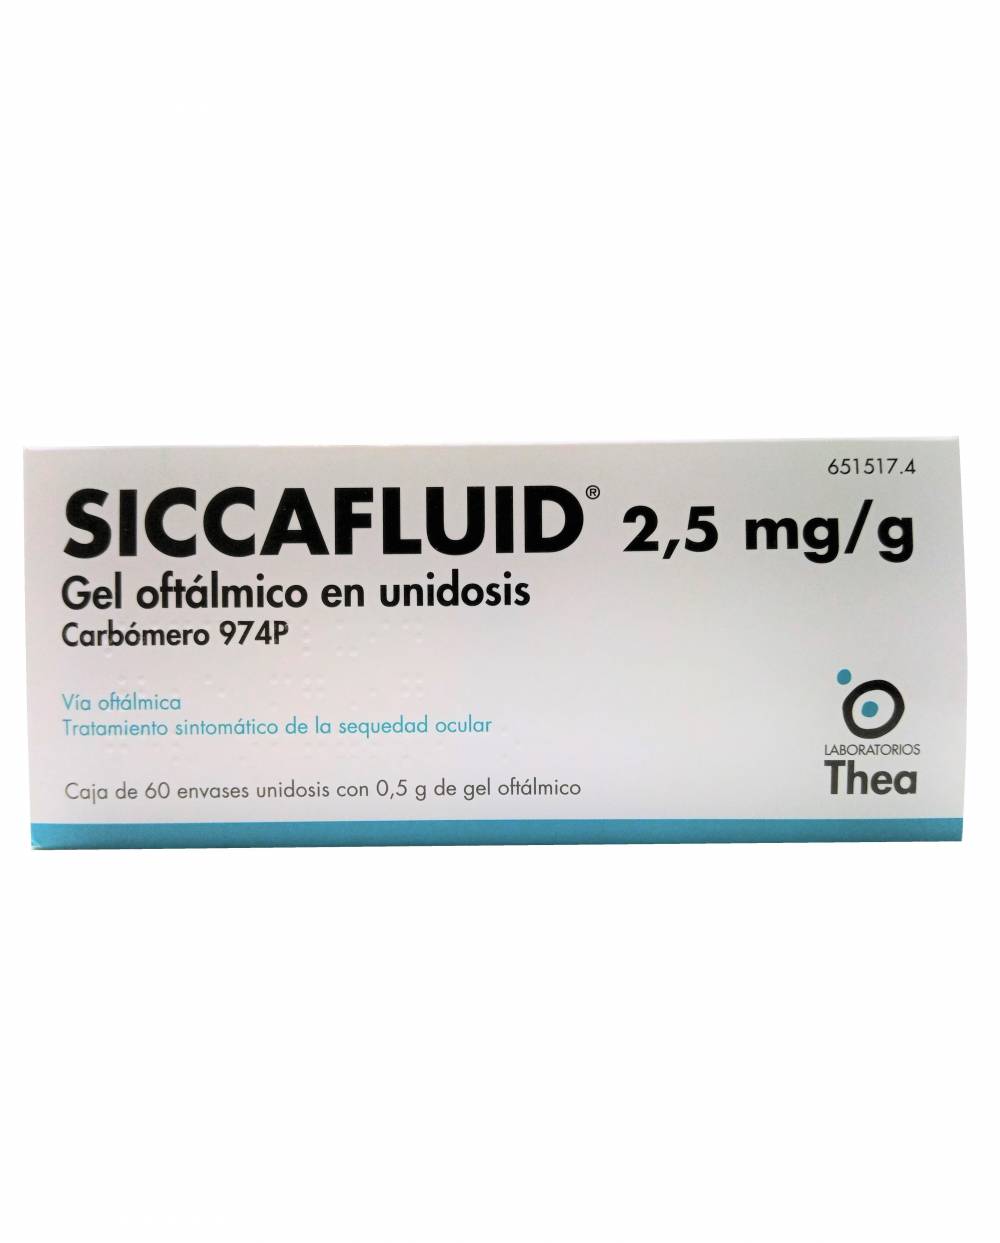 Siccafluid 2.5 mg/g - gel oftálmico - 60 unidades de 0.5 g